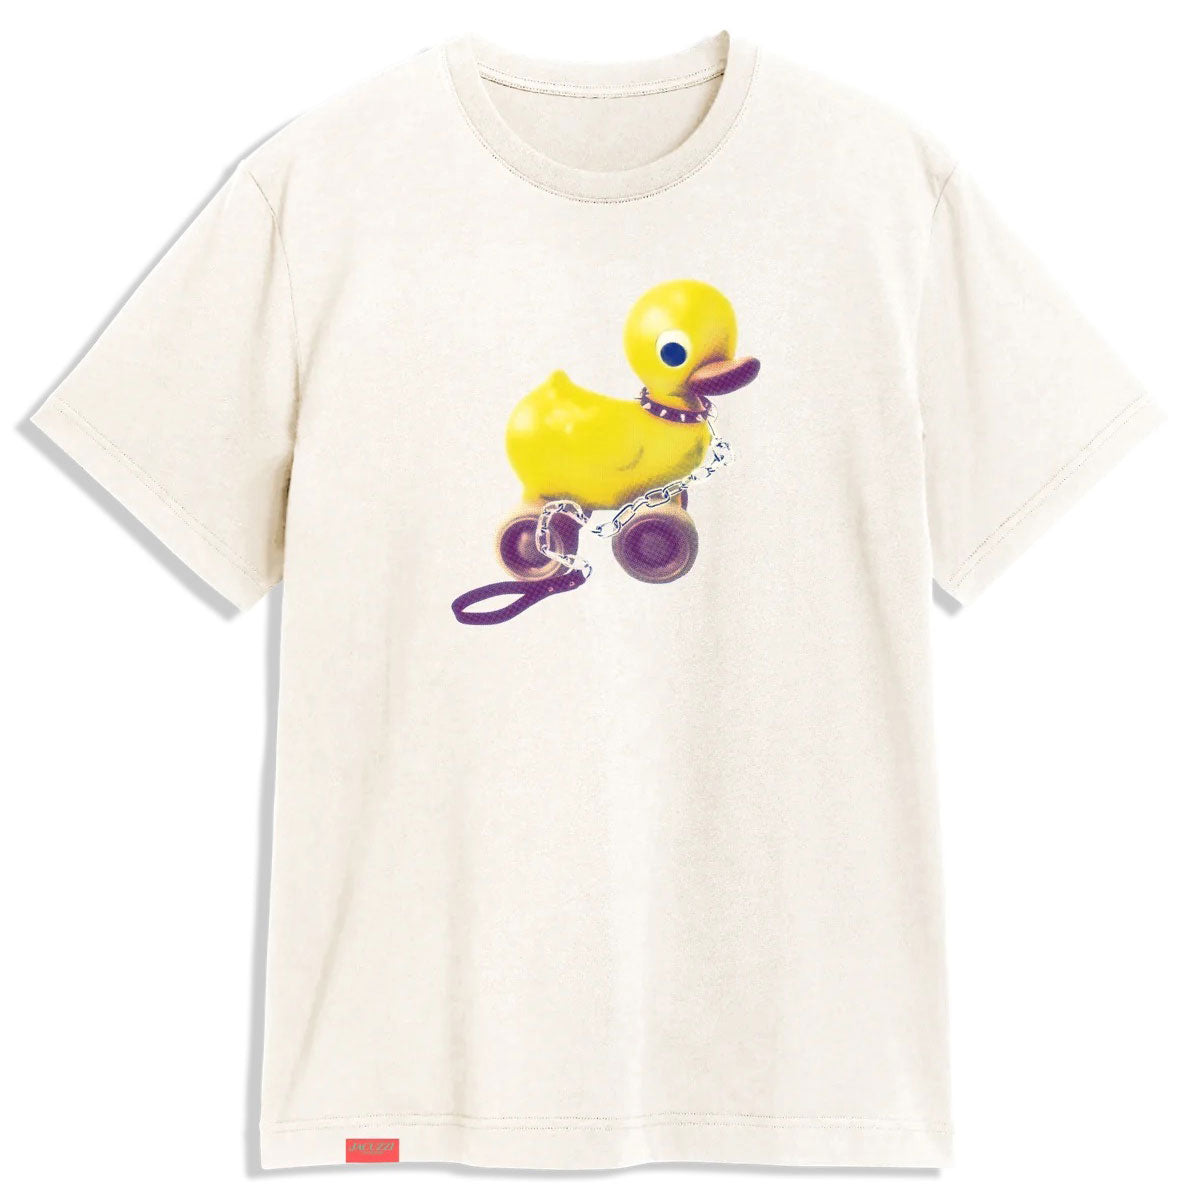 Jacuzzi Duck Premium T-Shirt - Vintage White image 1